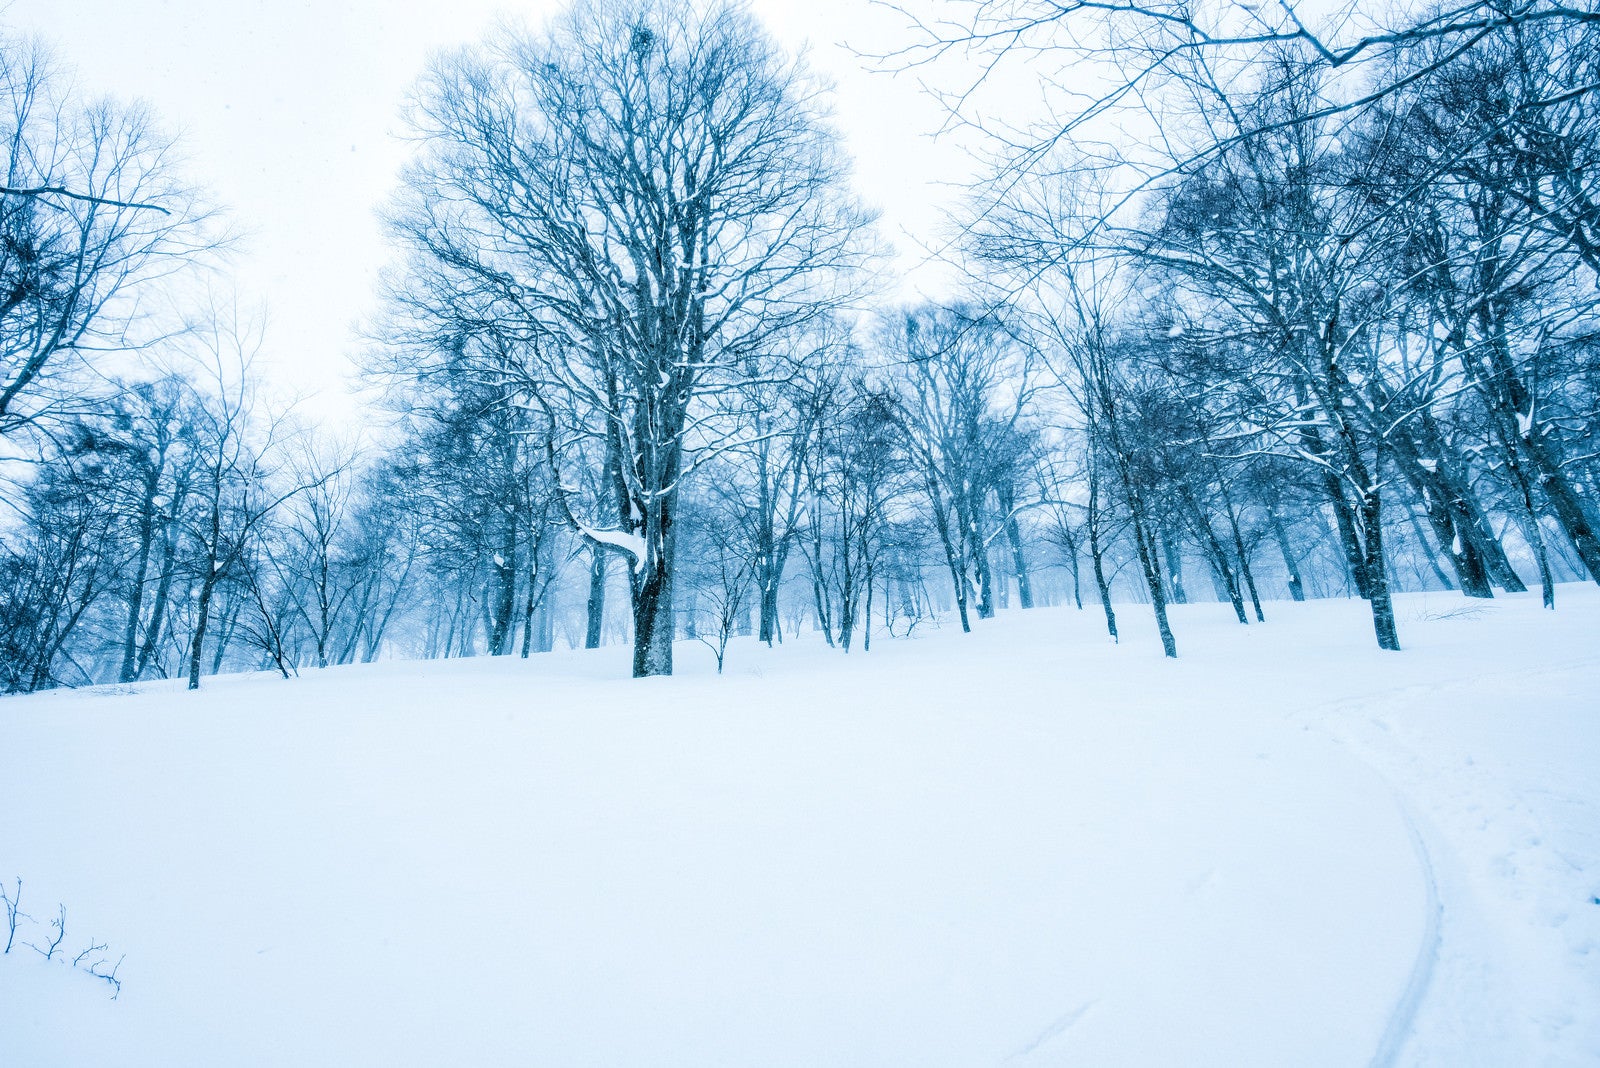 「積雪に残るシュプールと木々に積もる雪」の写真